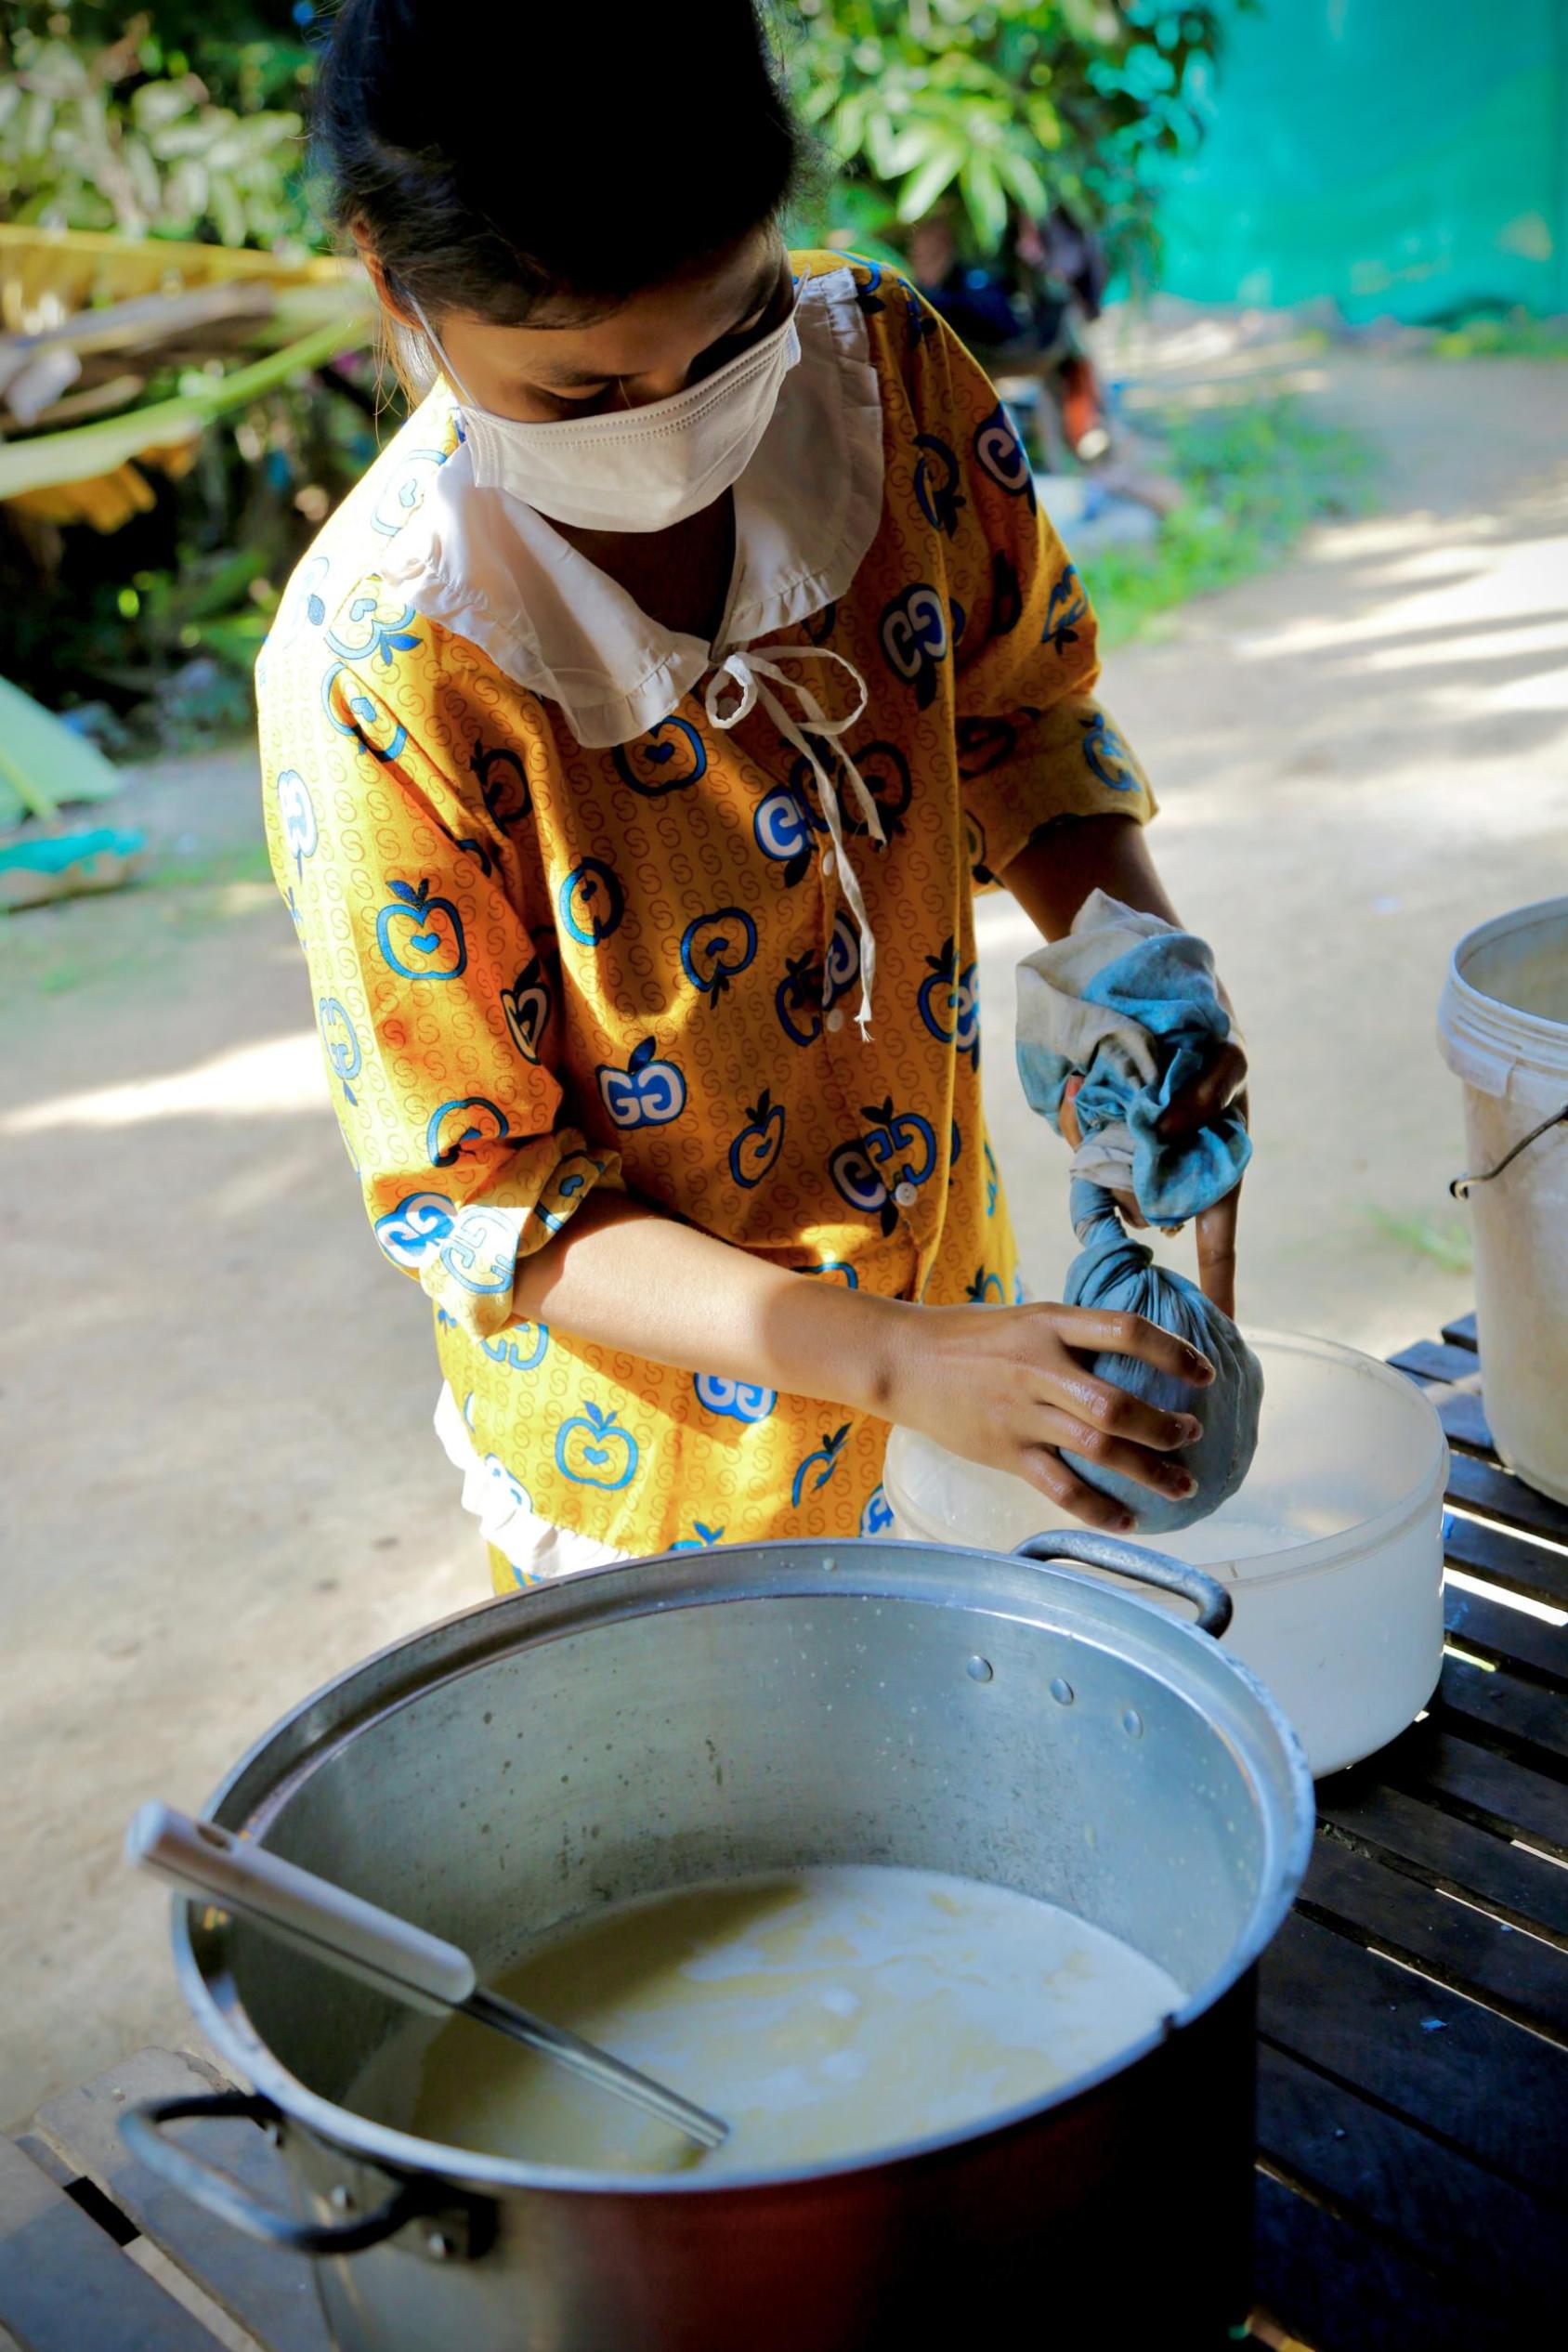 امرأة تعصر فول الصويا المطبوخ في منشفة لصنع حليب الصويا.